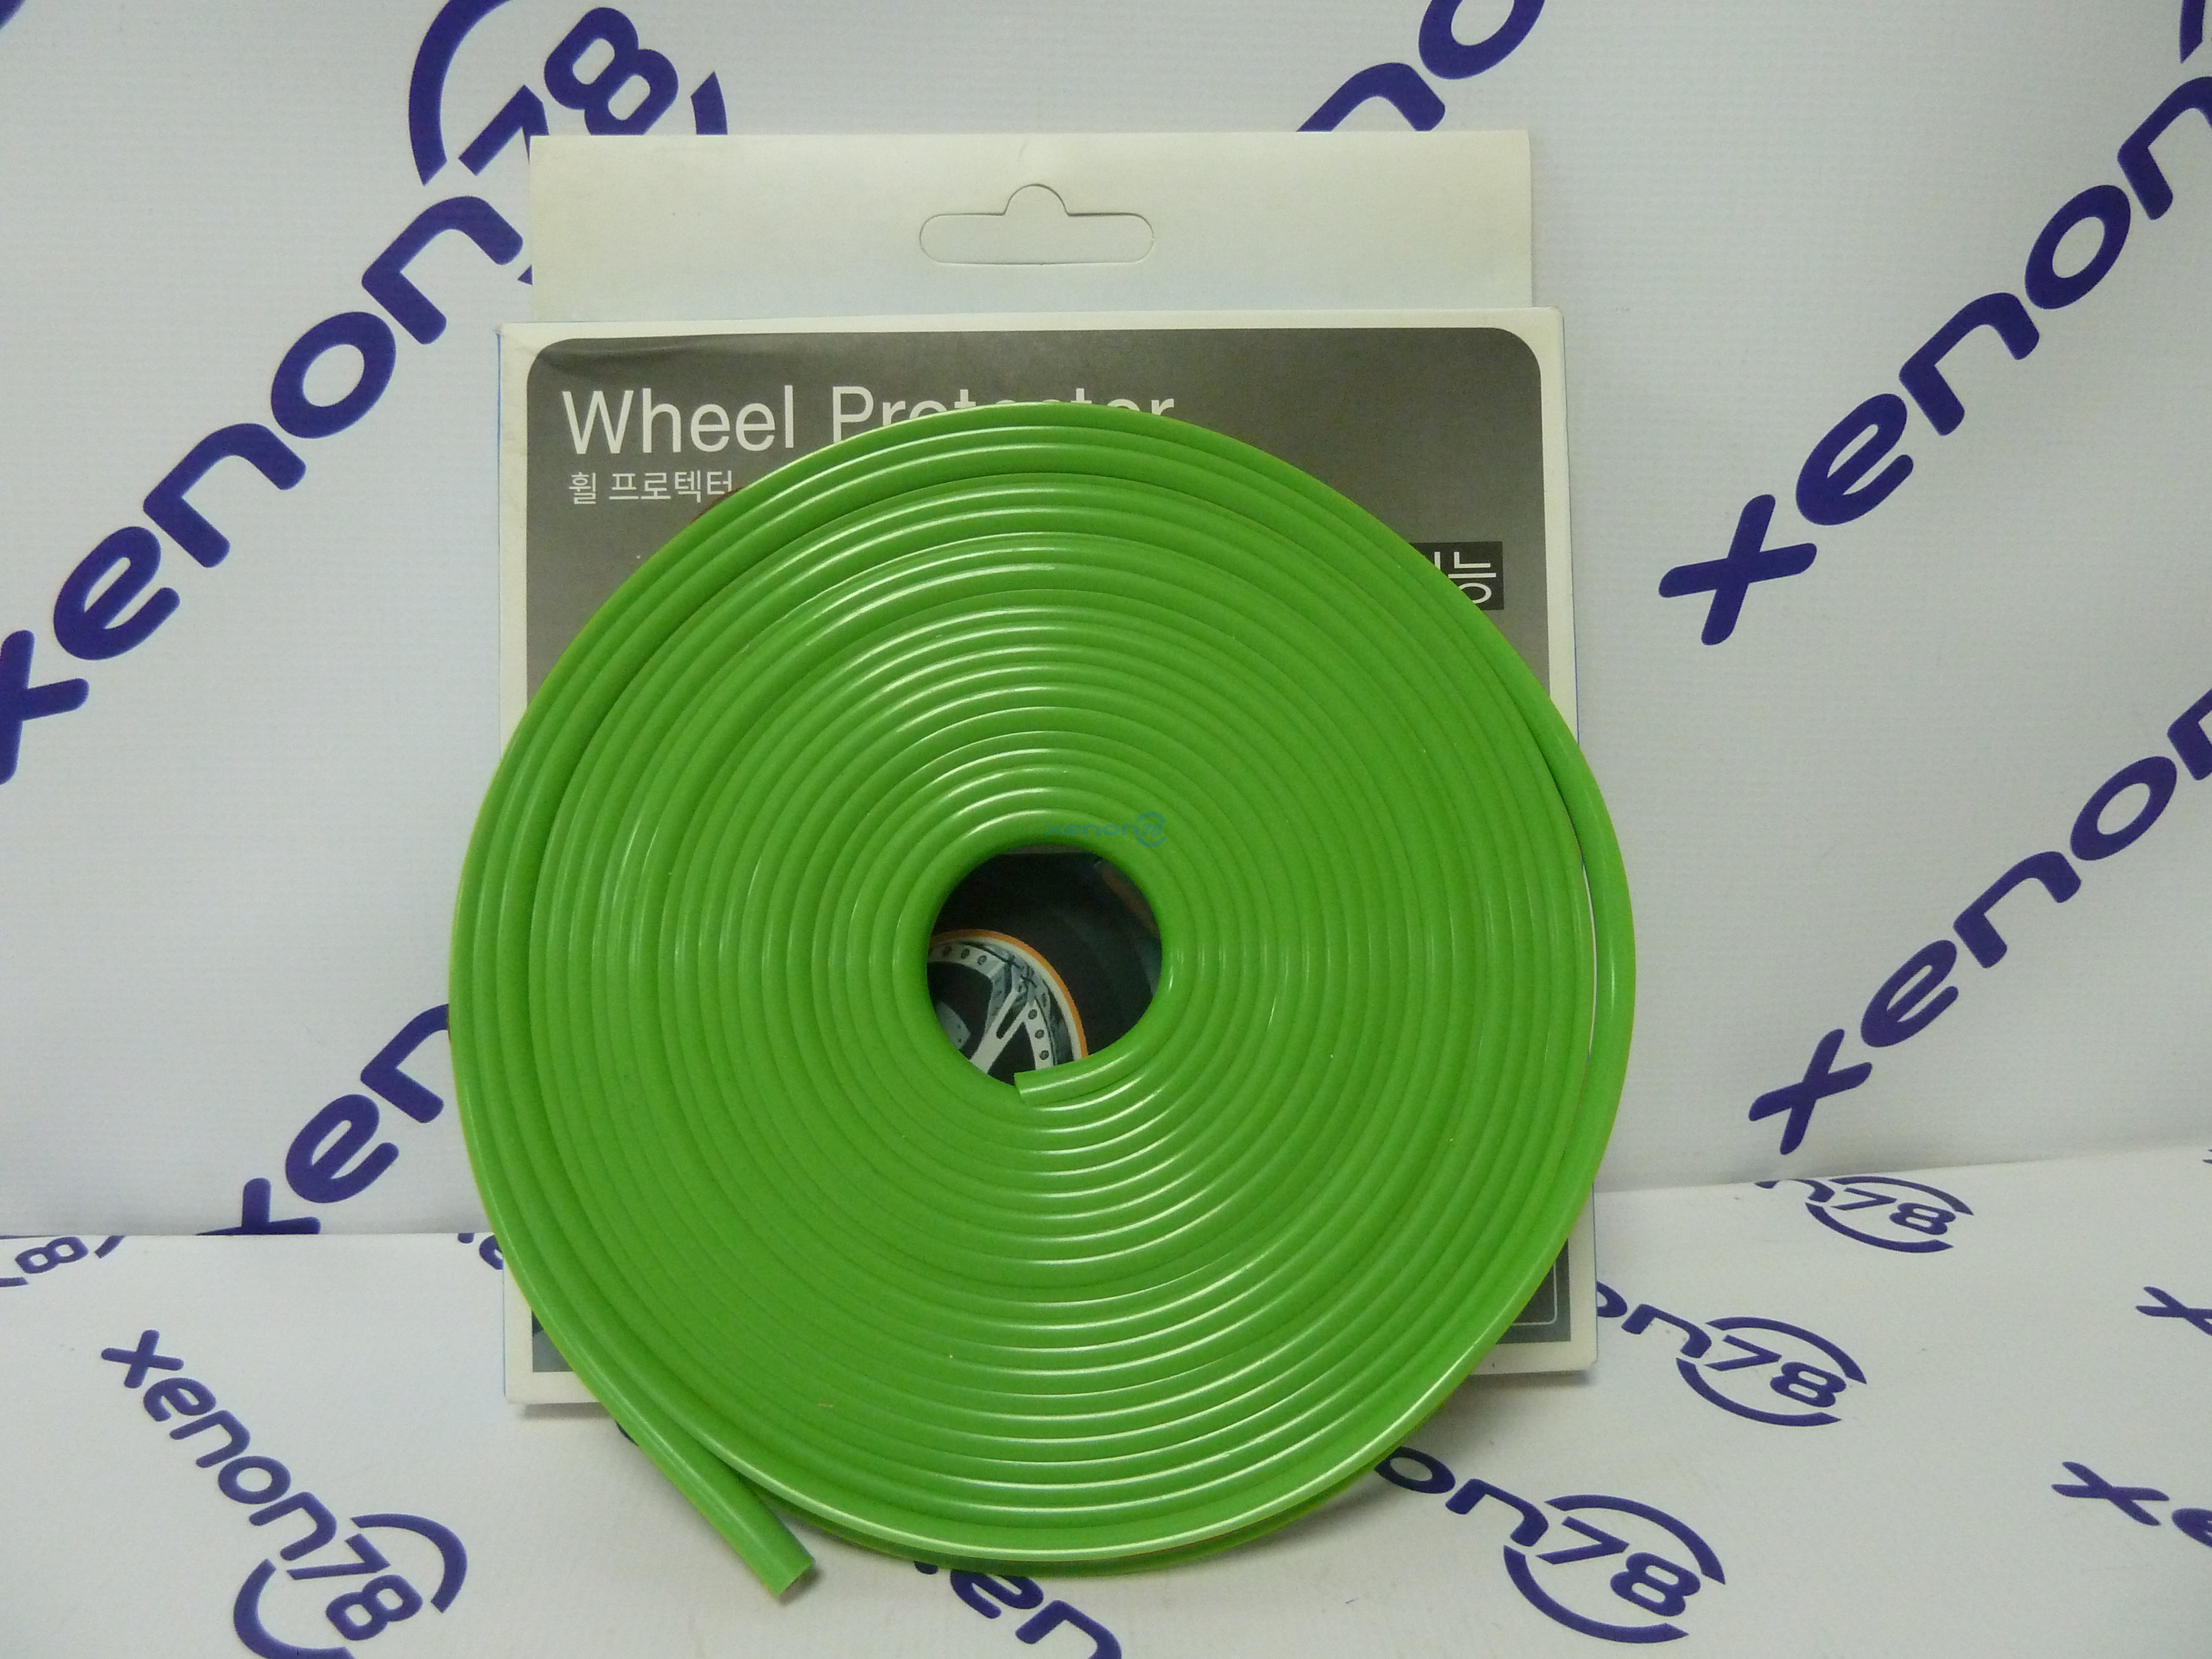 Защитная тюнинг-лента - ободок для дисков, цвет Зеленый(Guard Weel)  (длина 6,6м = 5 колёс по 22")